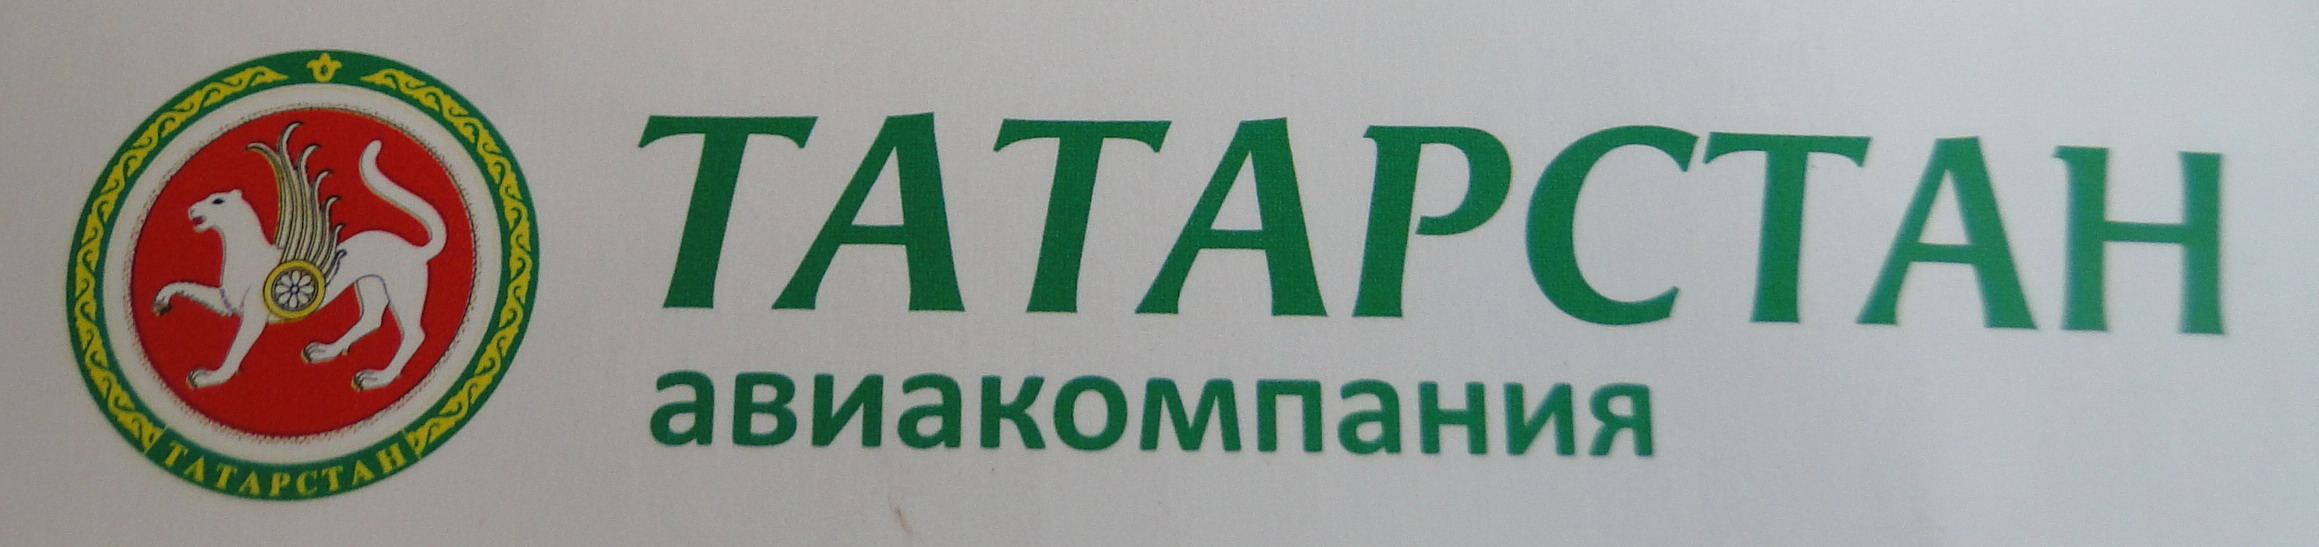 韃靼斯坦航空公司標誌